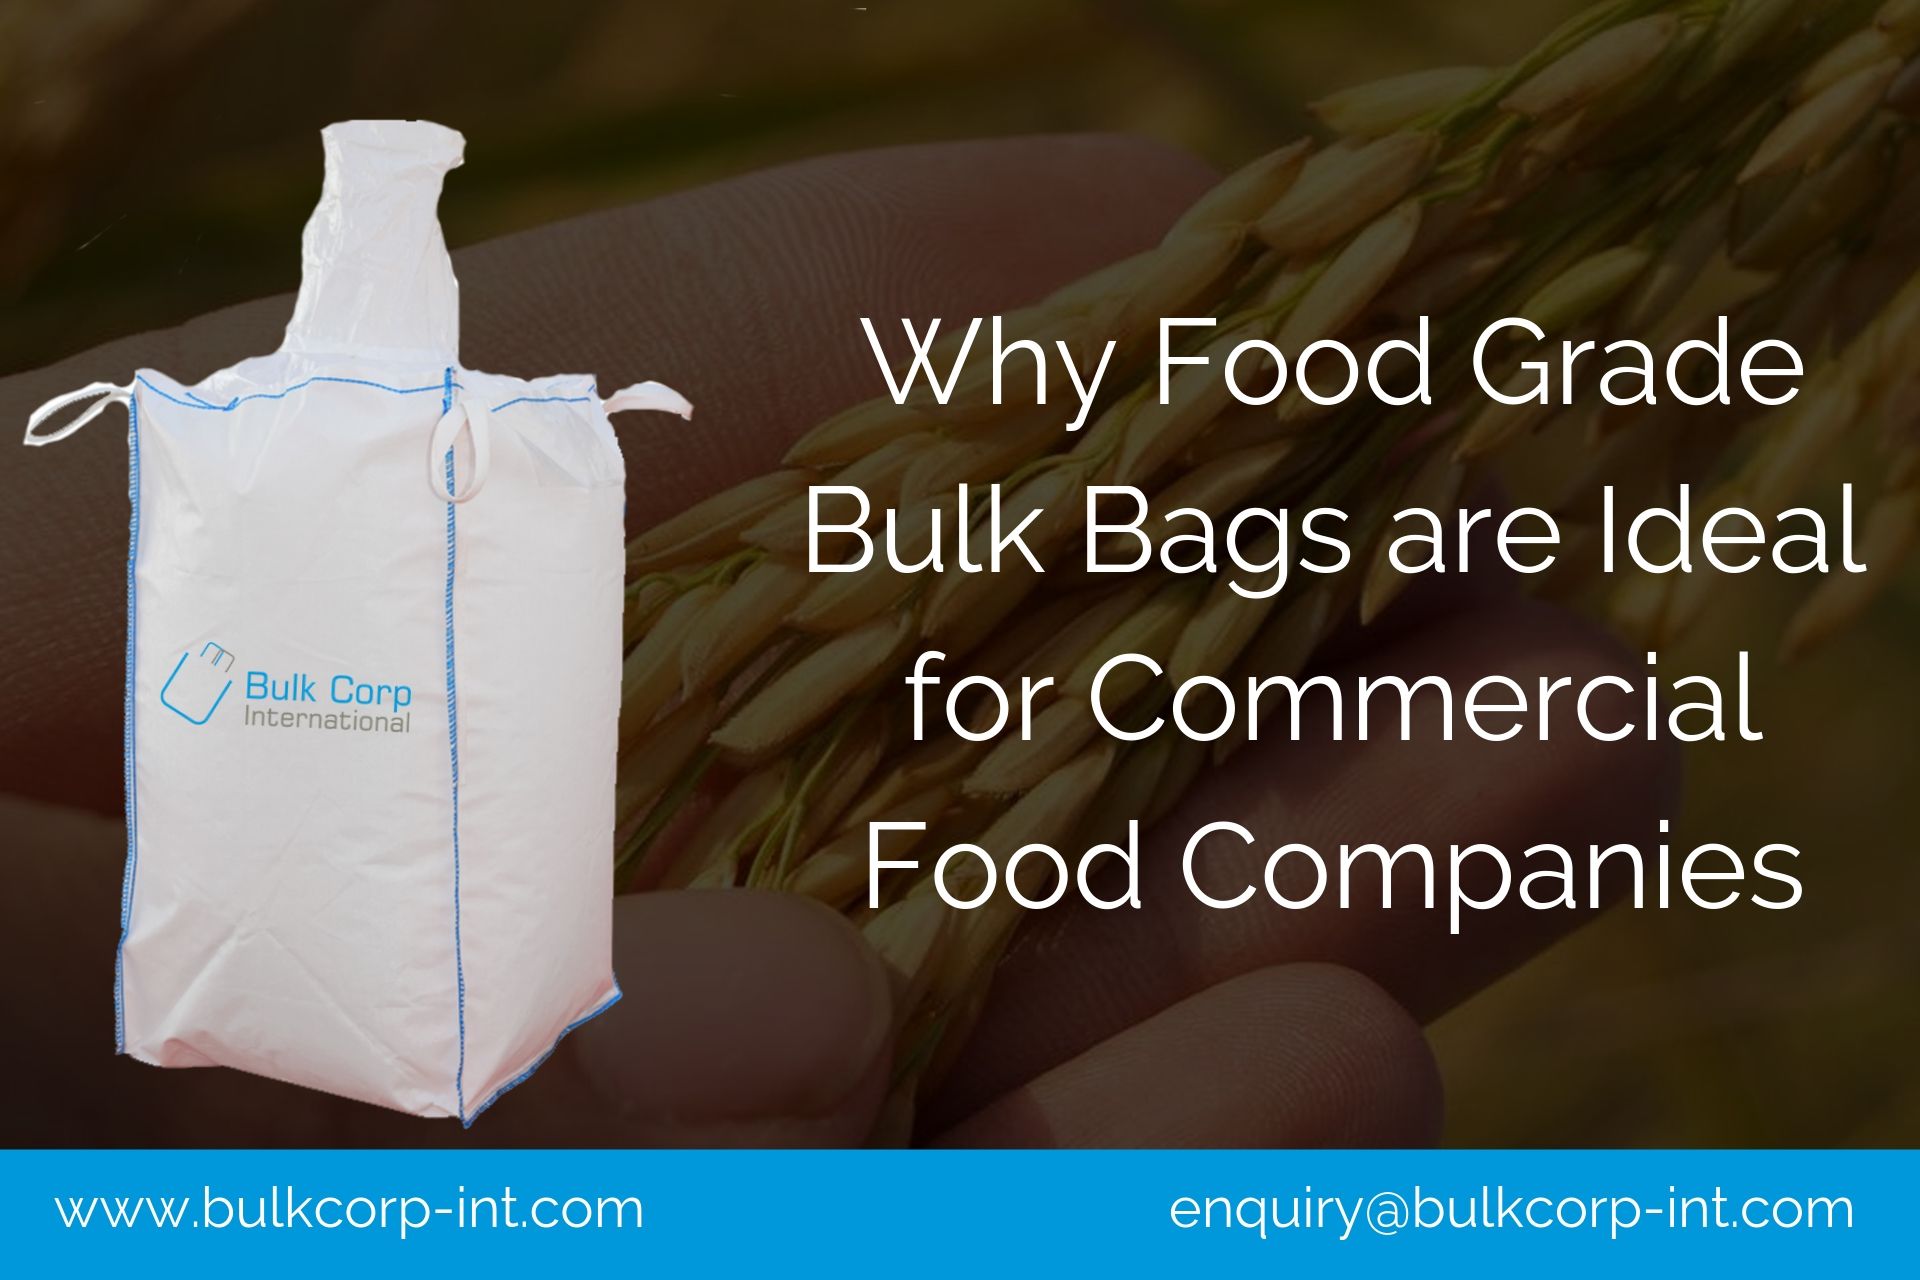 Food Grade Bulk Bags, Food Grade Bags